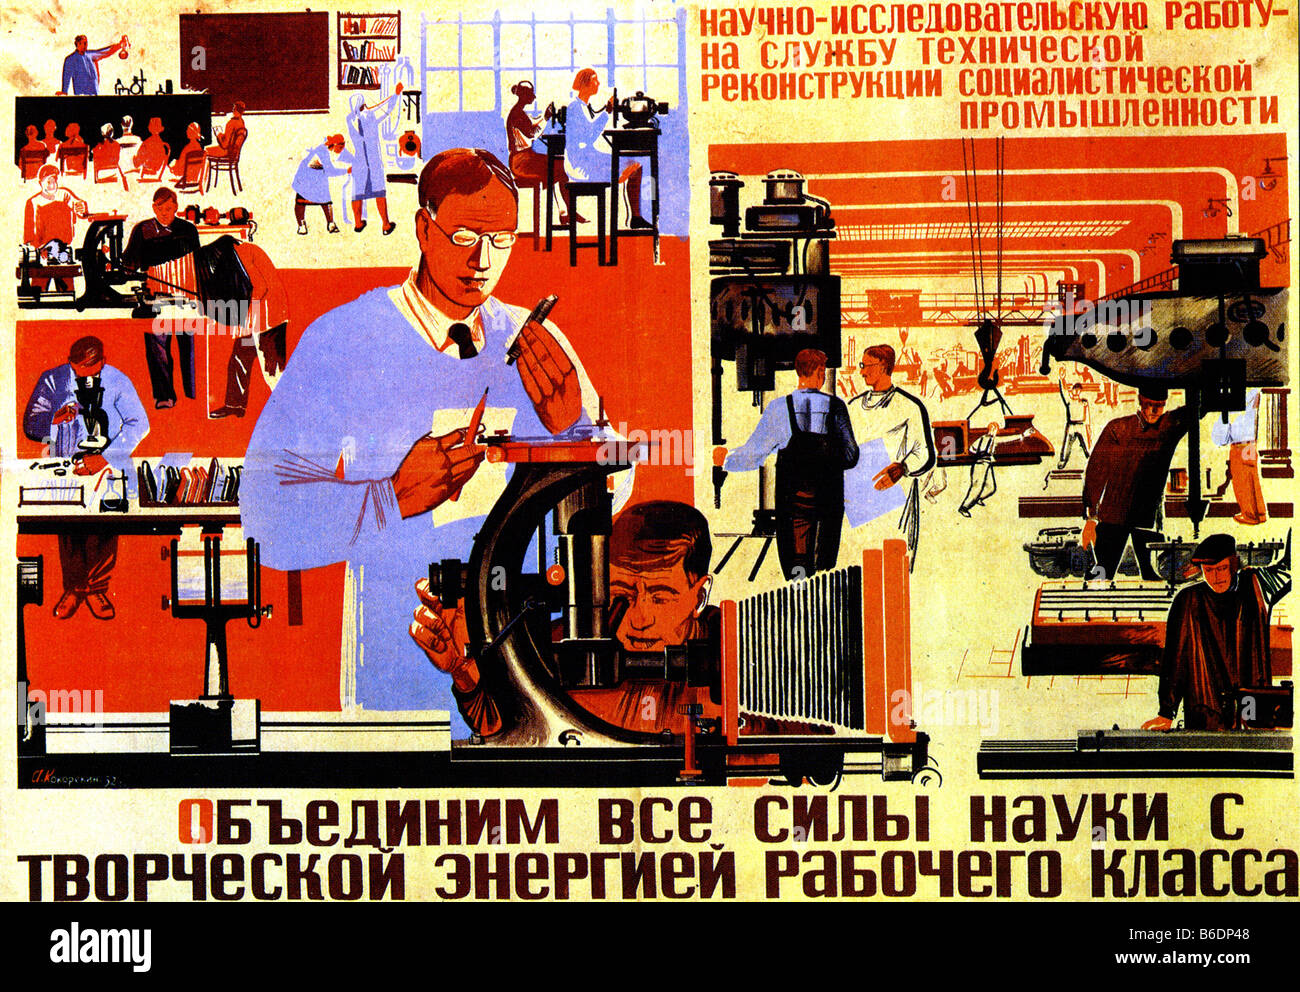 SOWJETISCHEN russischen Plakat 1932 sagt "Wir müssen die Macht der Wissenschaft mit der schöpferischen Energie des Proletariats vereinen" Stockfoto